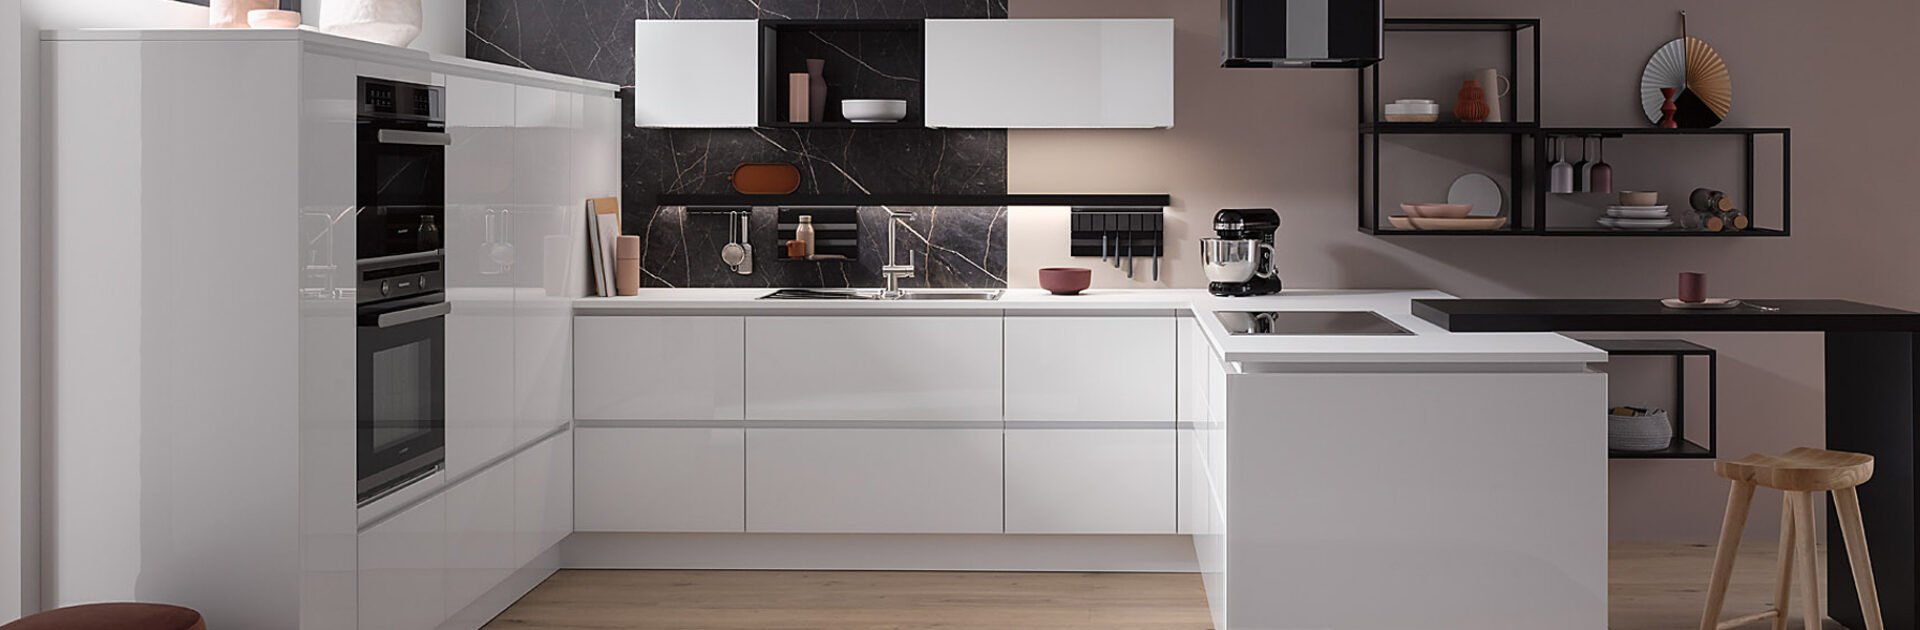 Witte concept130 keuken | Eigenhuis Keukens